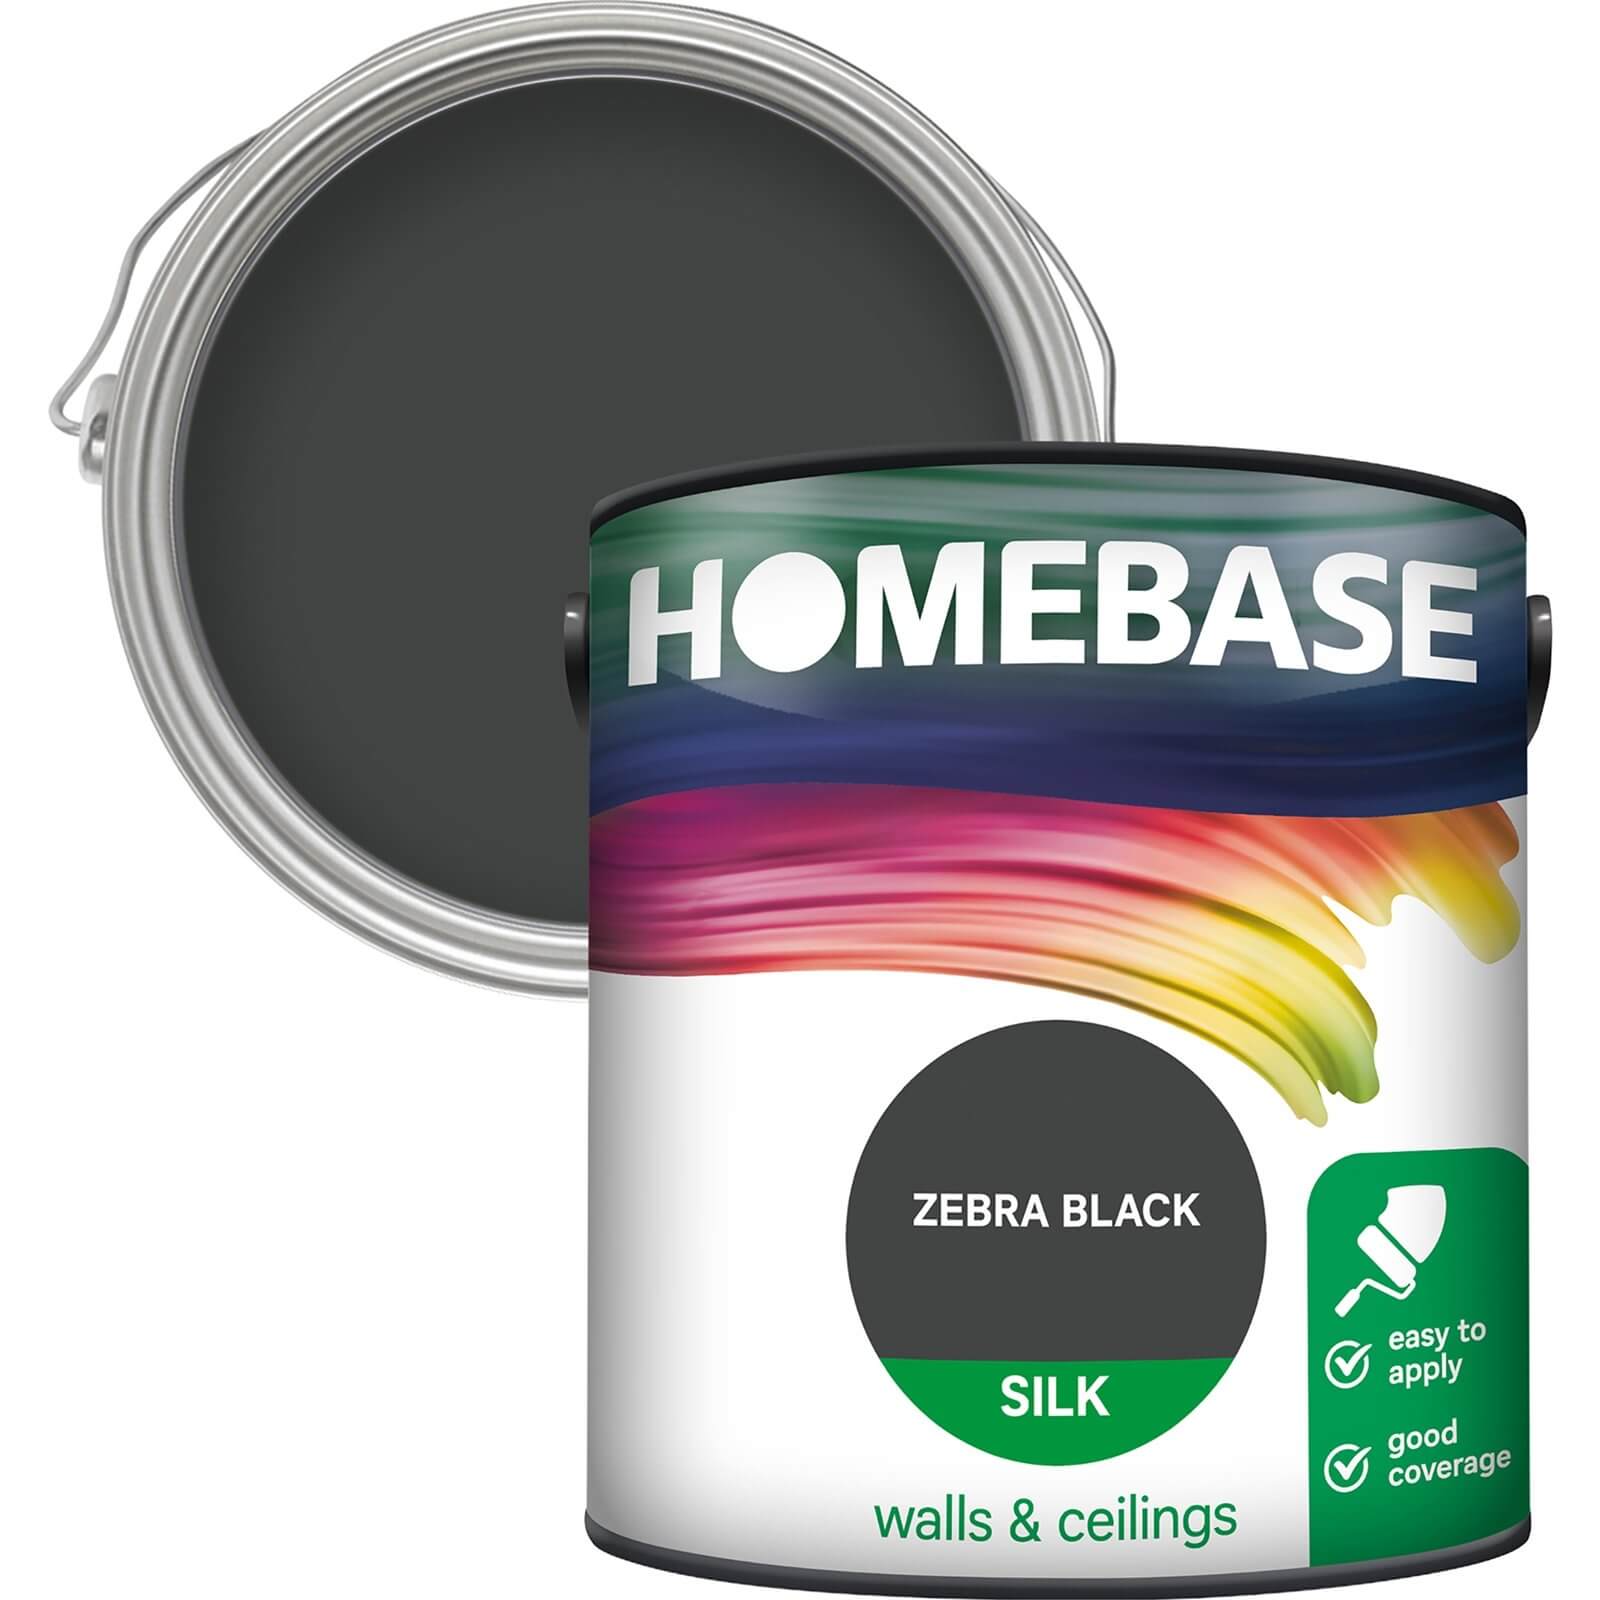 Homebase Silk Emulsion Paint Zebra Black - 2.5L